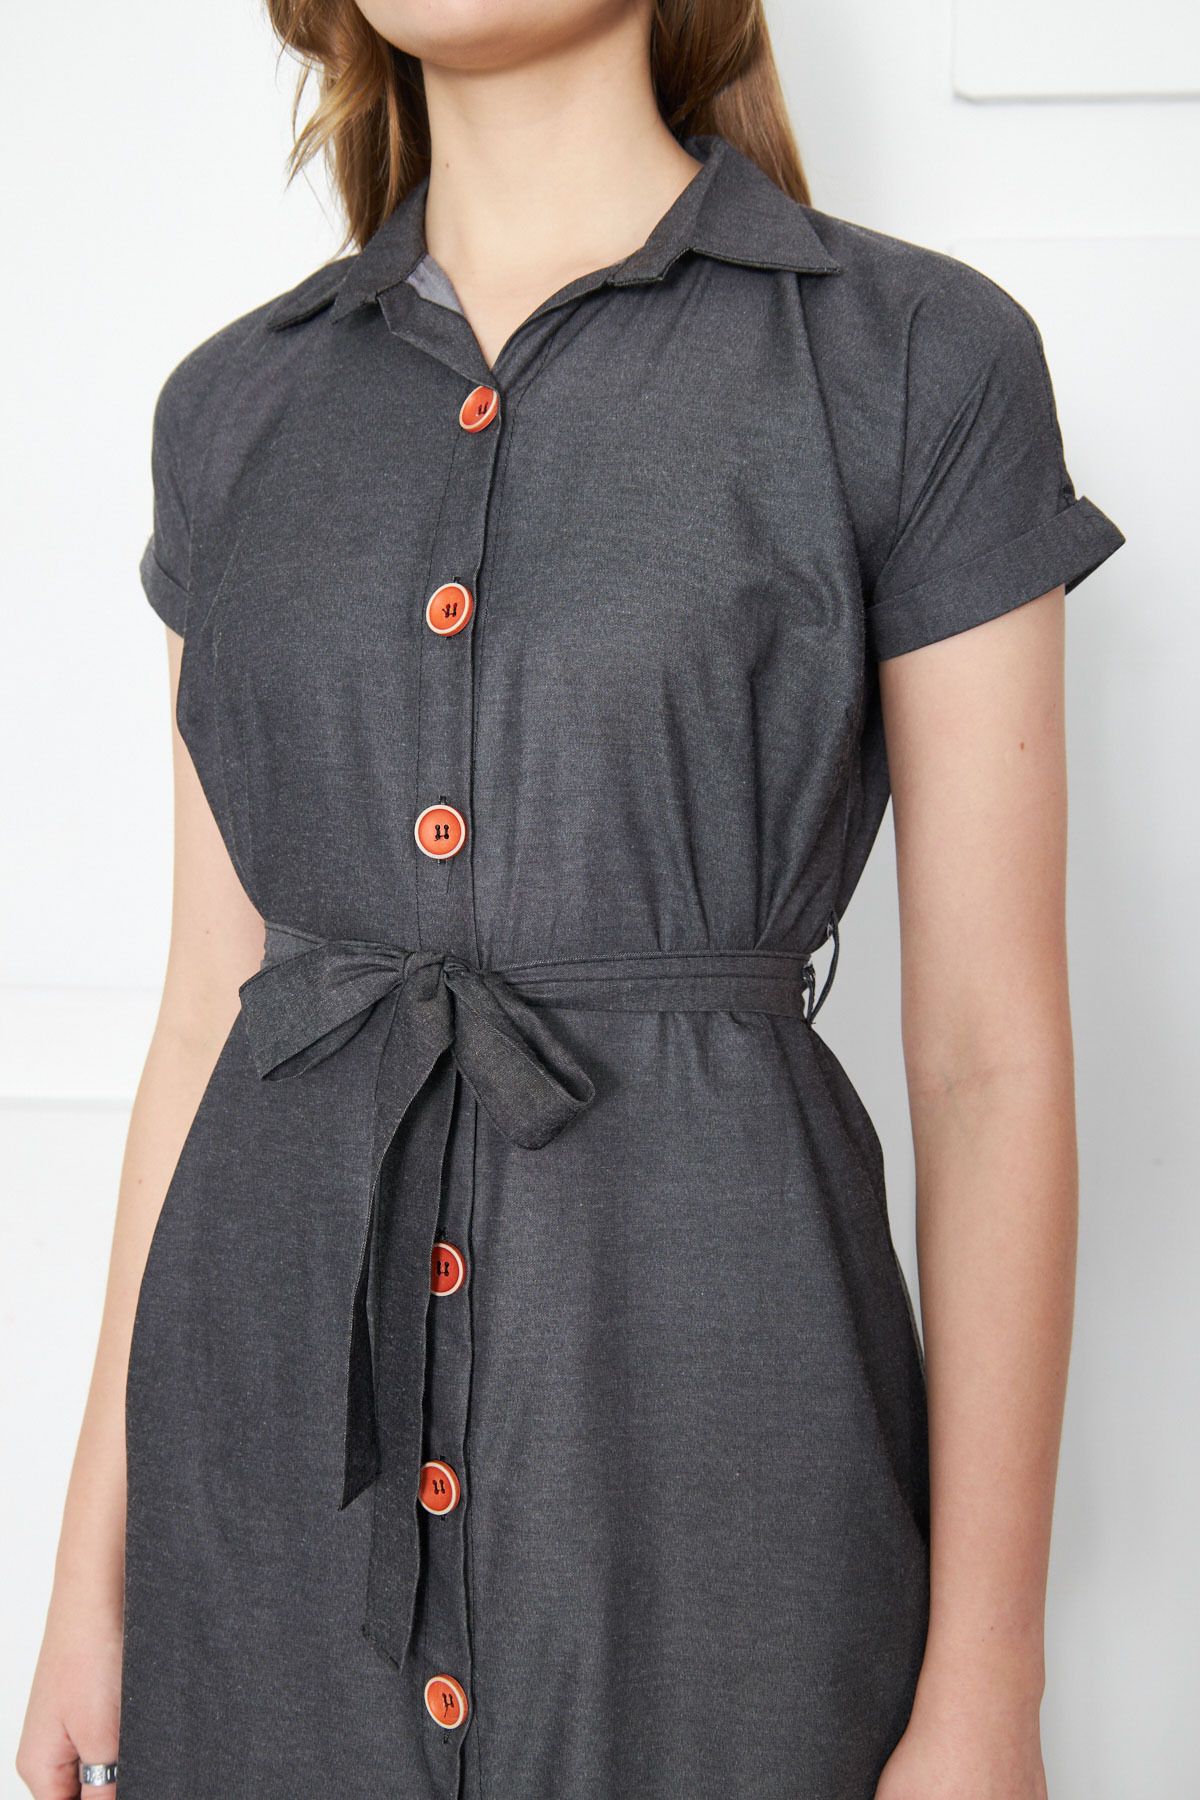 Kadın Antrasit Beli Kemerli Kısa Kol Gömlek Elbise ARM-19Y001068